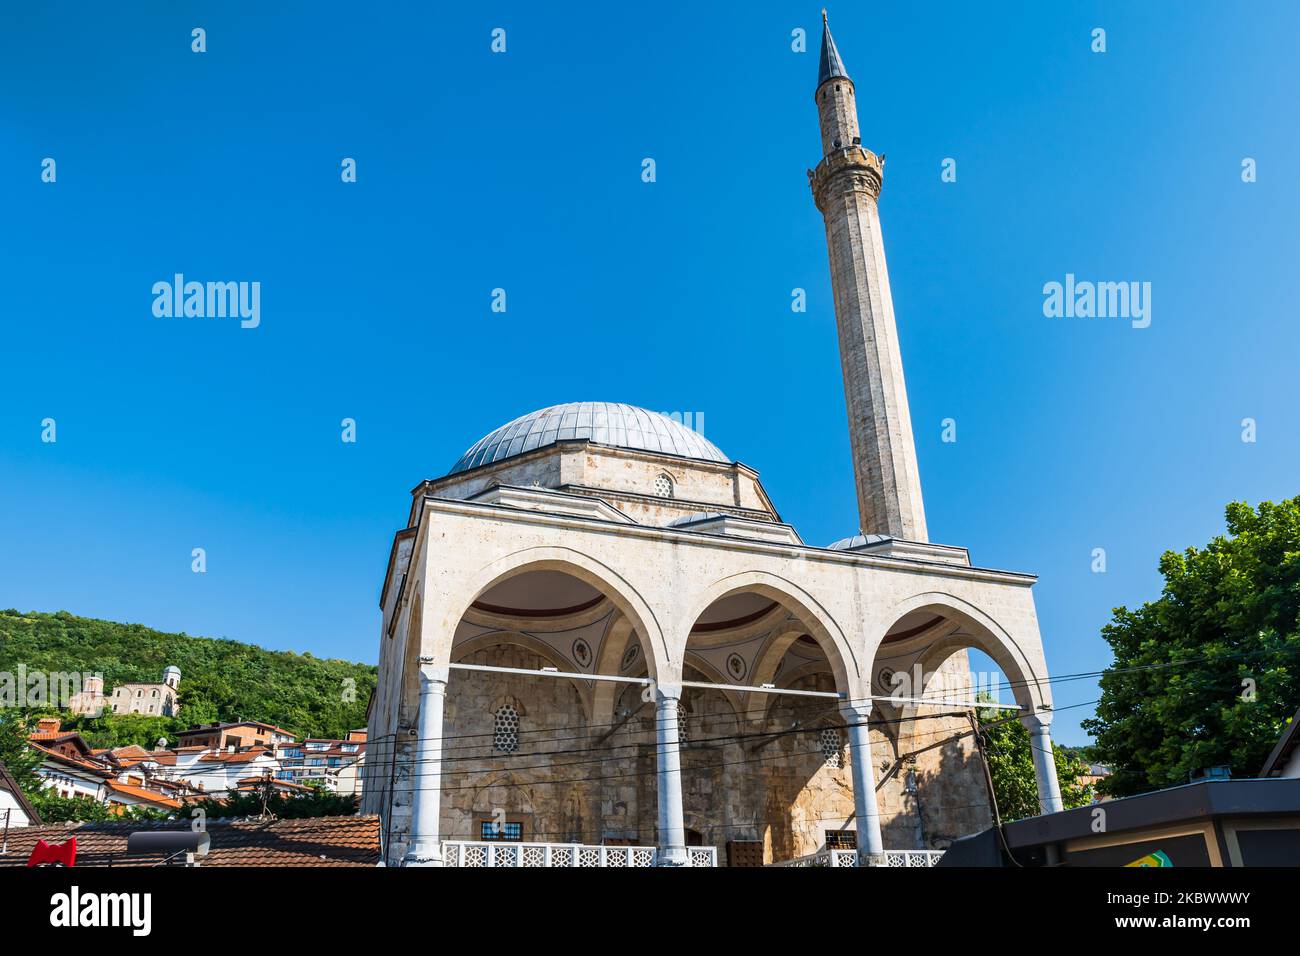 Mosquée Sinan Pasha à Prizren, Kosovo. Mosquée historique dans la ville de Prizren, Kosovo Banque D'Images